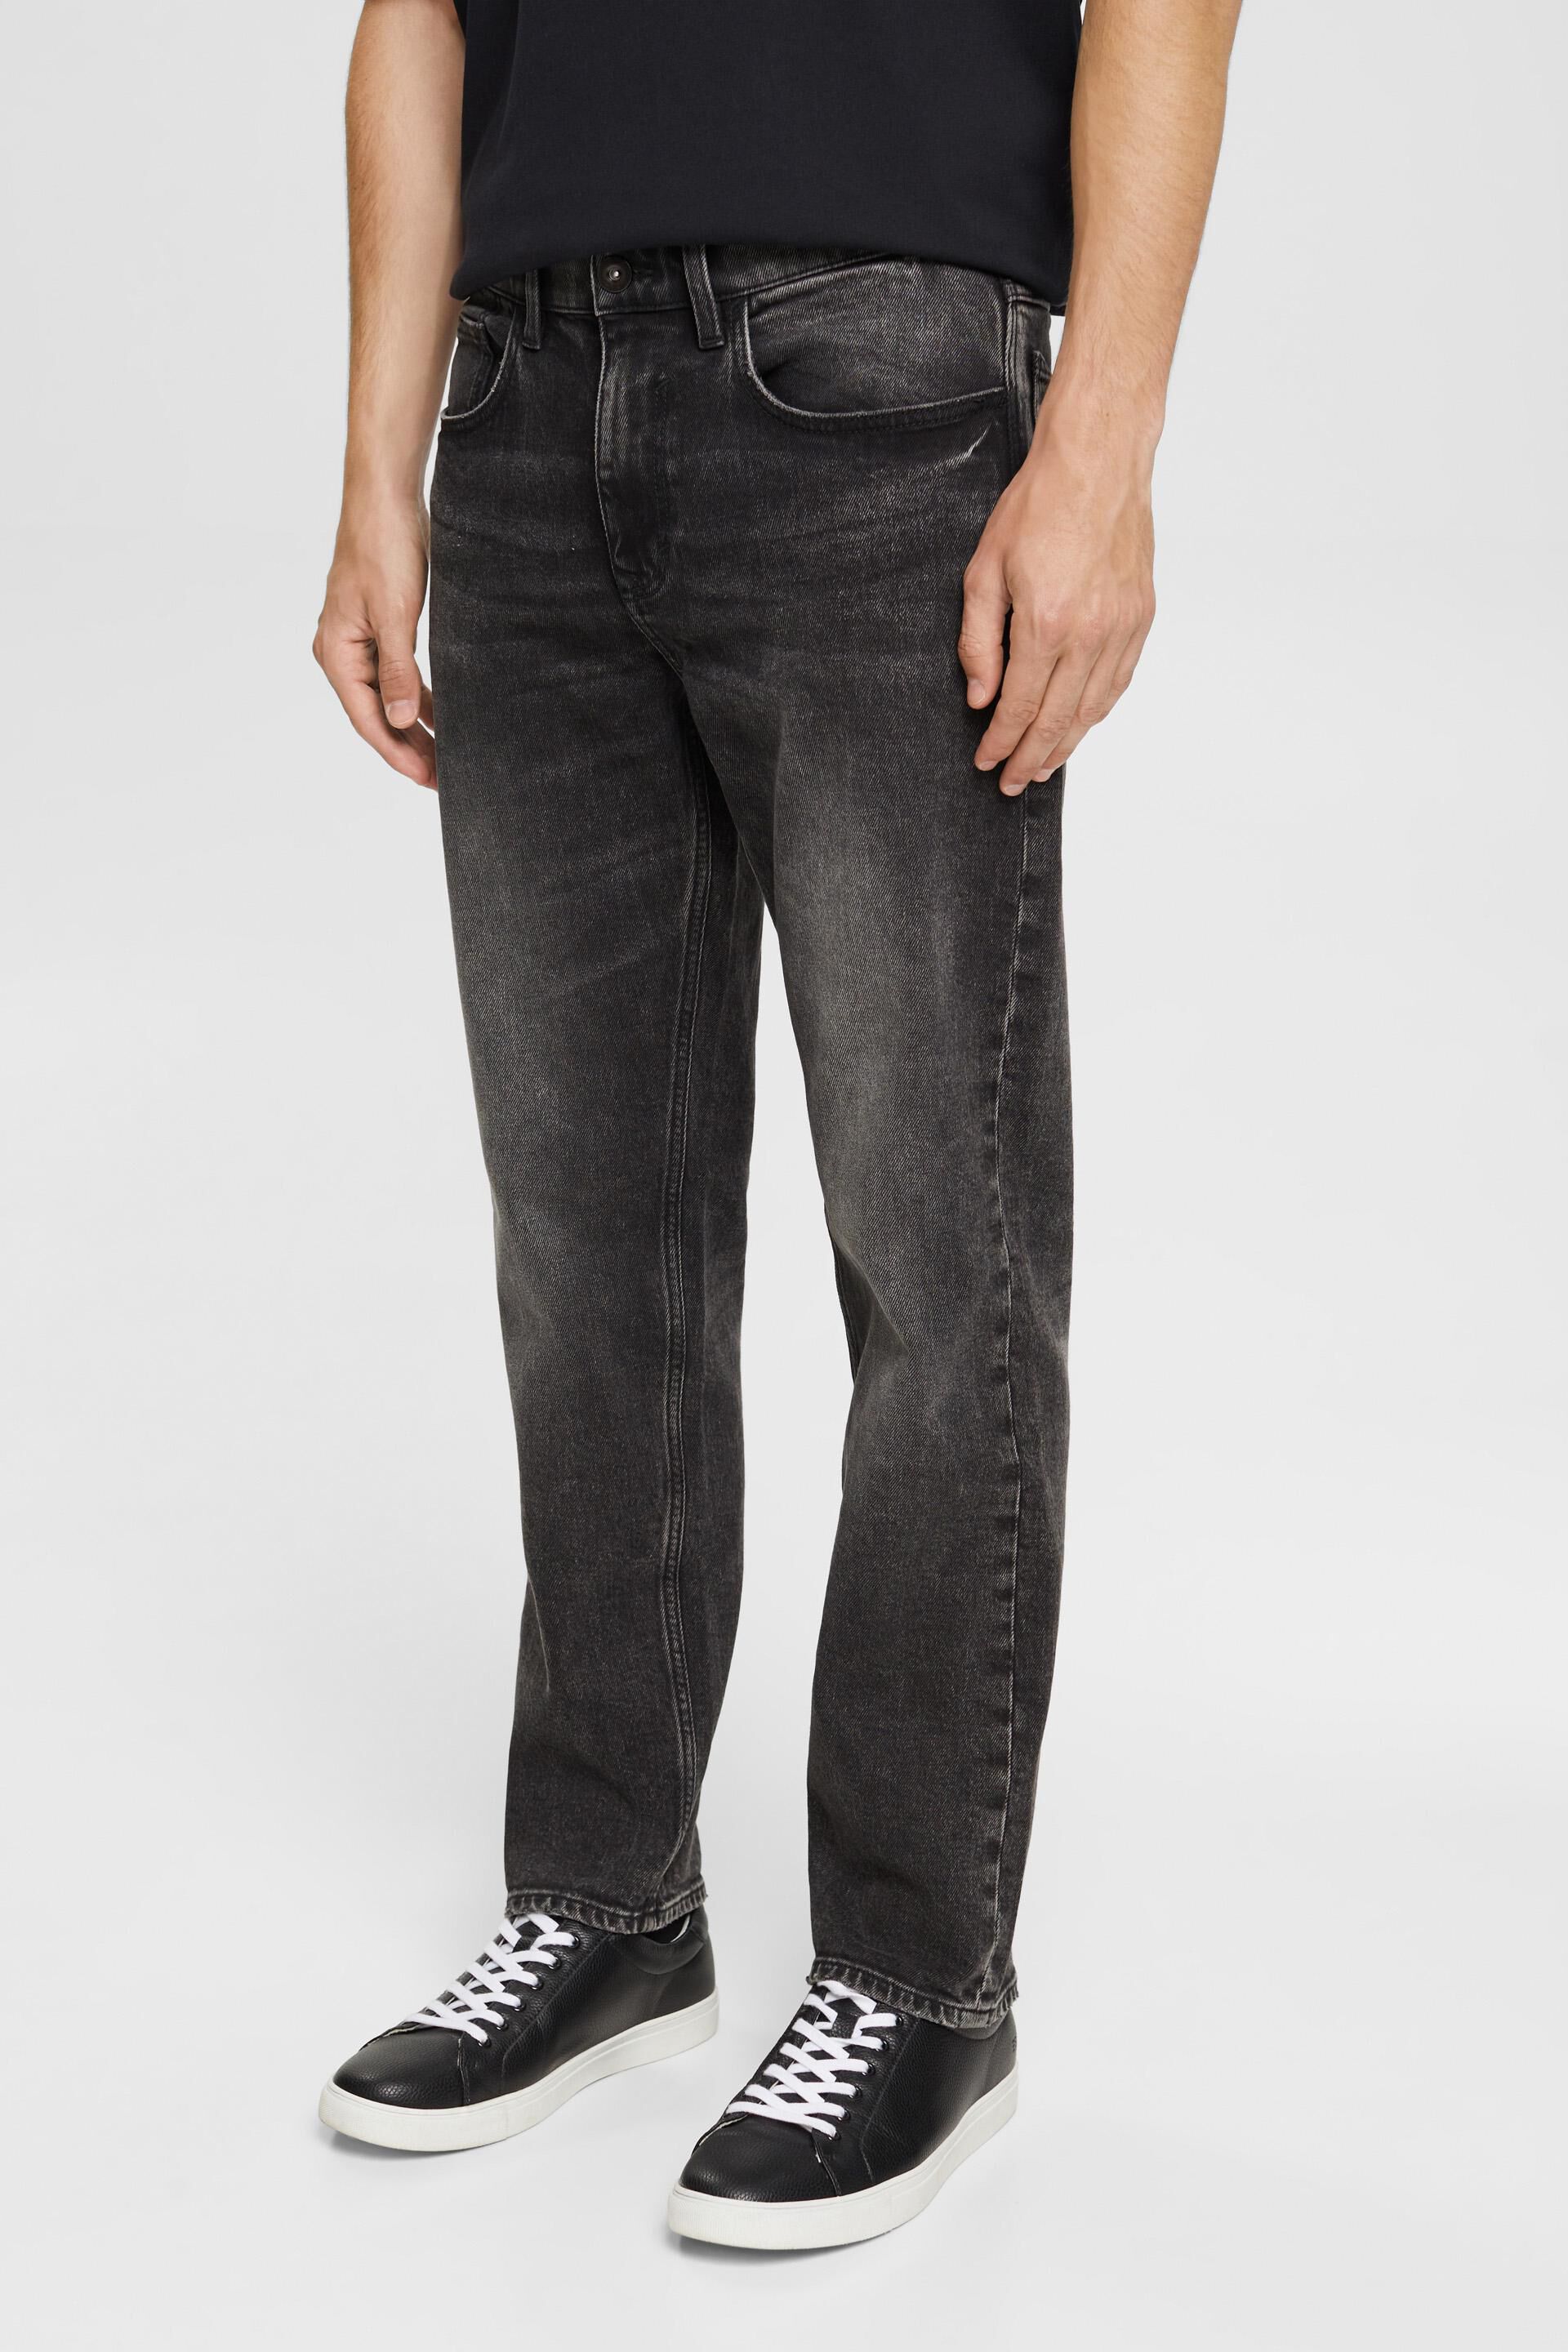 skarpt Umulig Celebrity ESPRIT - Washed out stretch jeans at our online shop